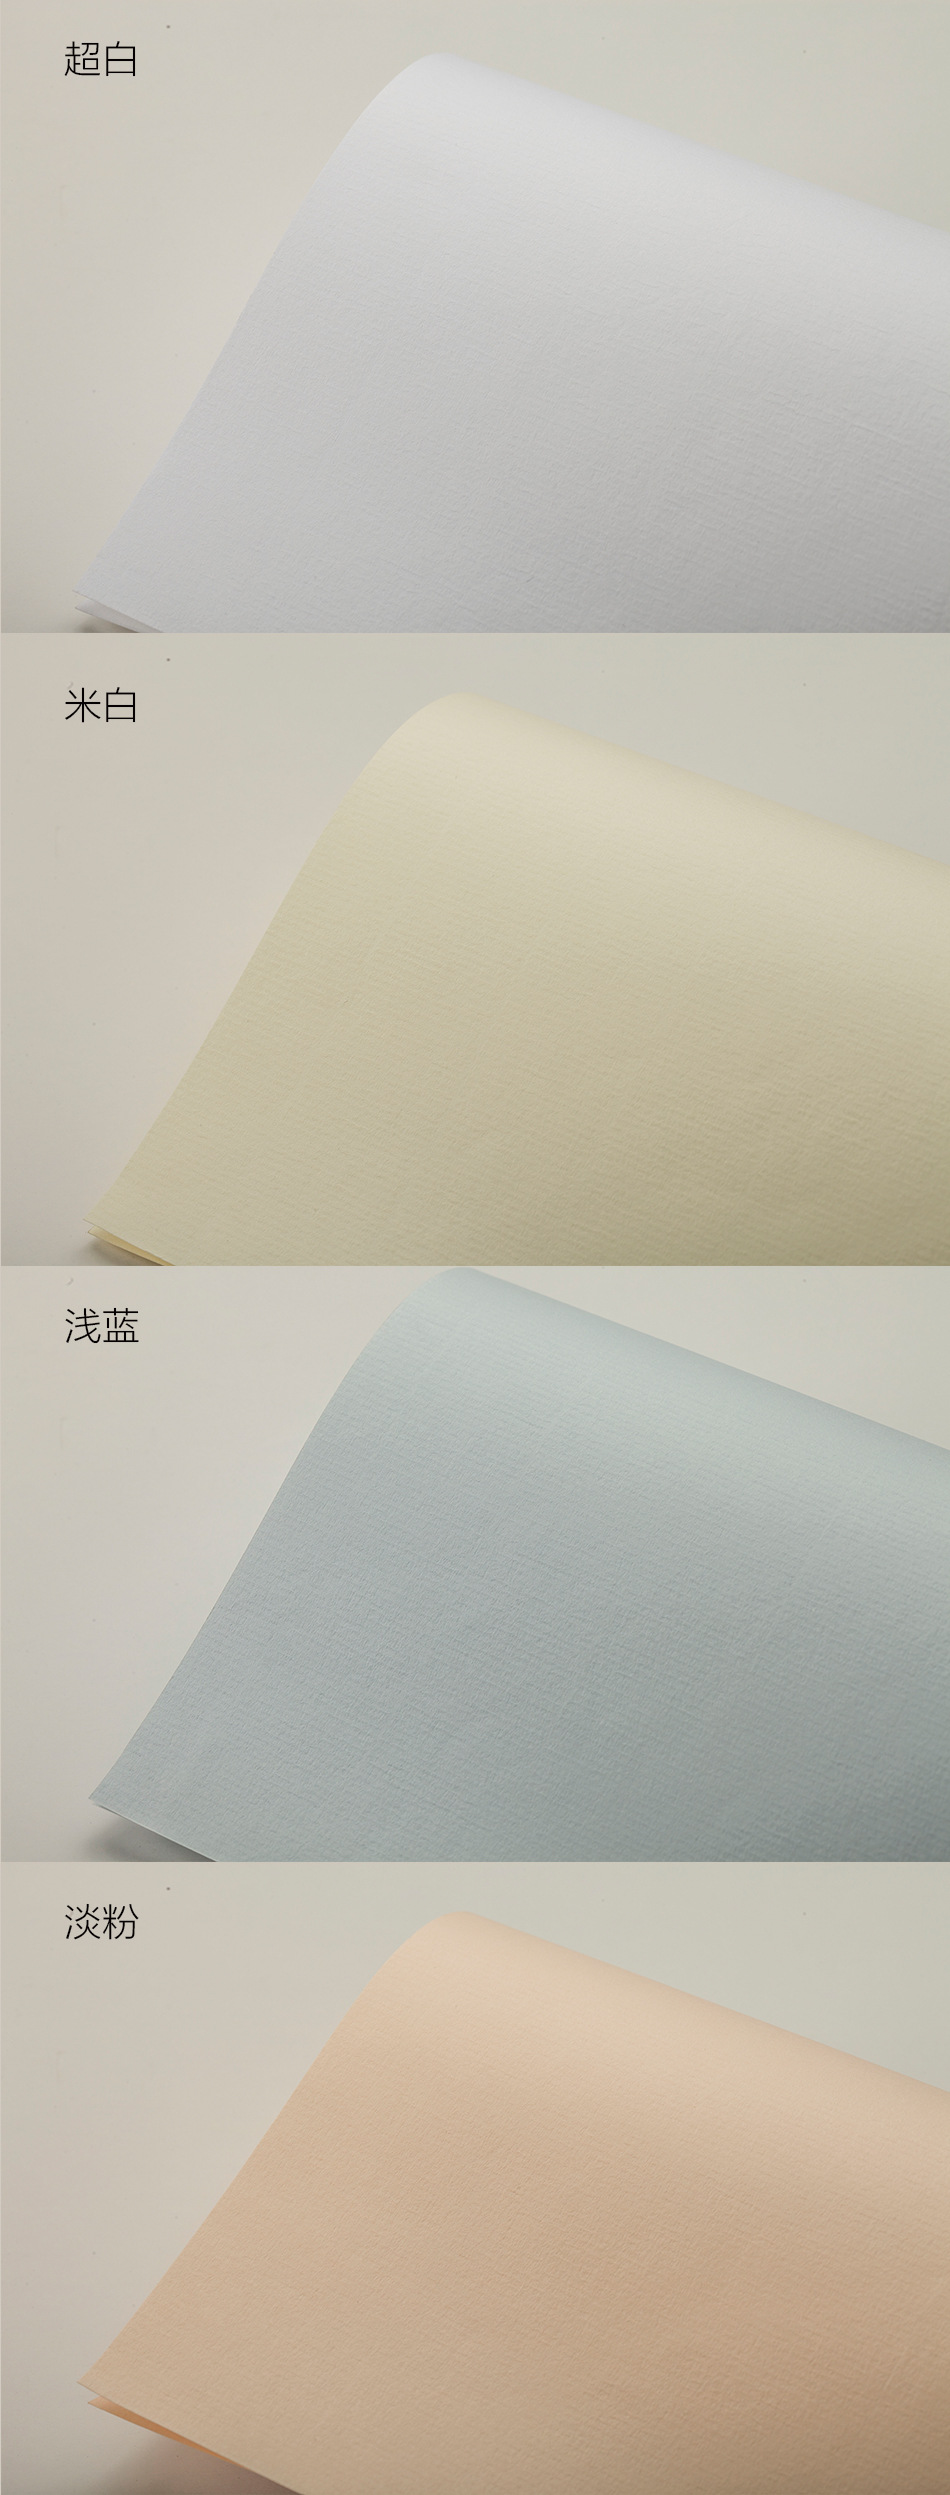 意象牌印象水印水纹纸 定位水纹纸 艺术办公用纸